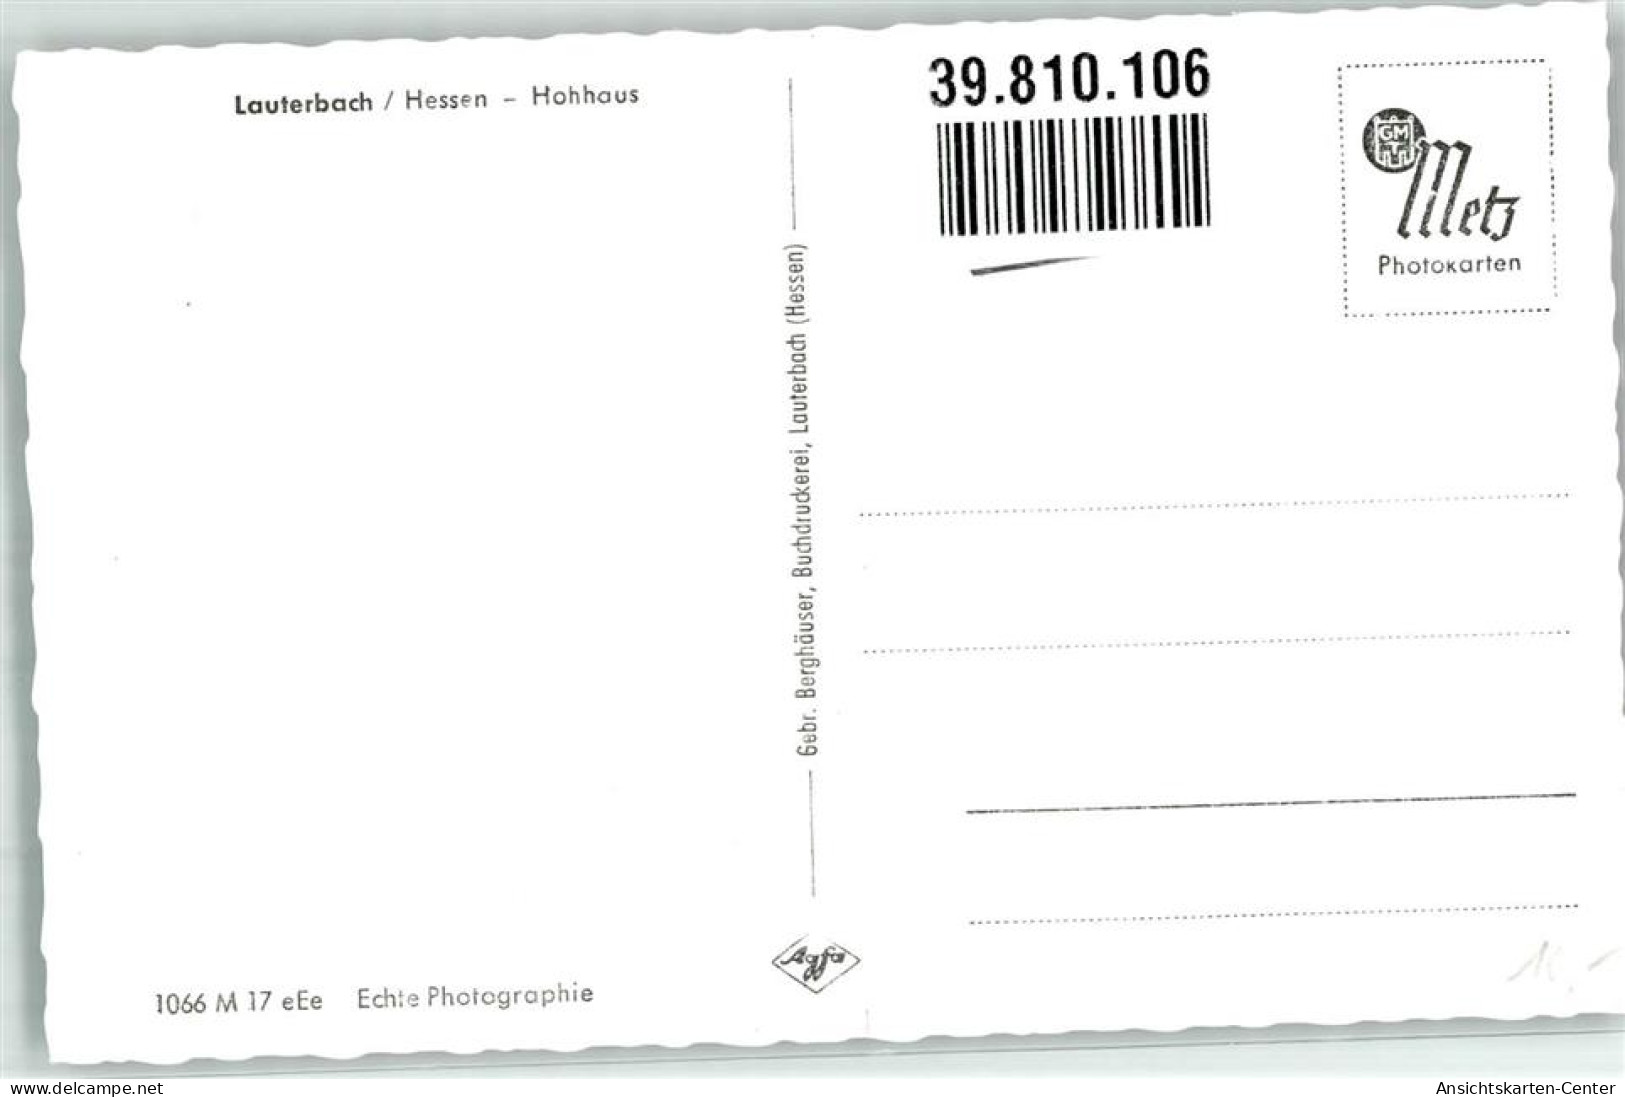 39810106 - Lauterbach Hessen - Lauterbach